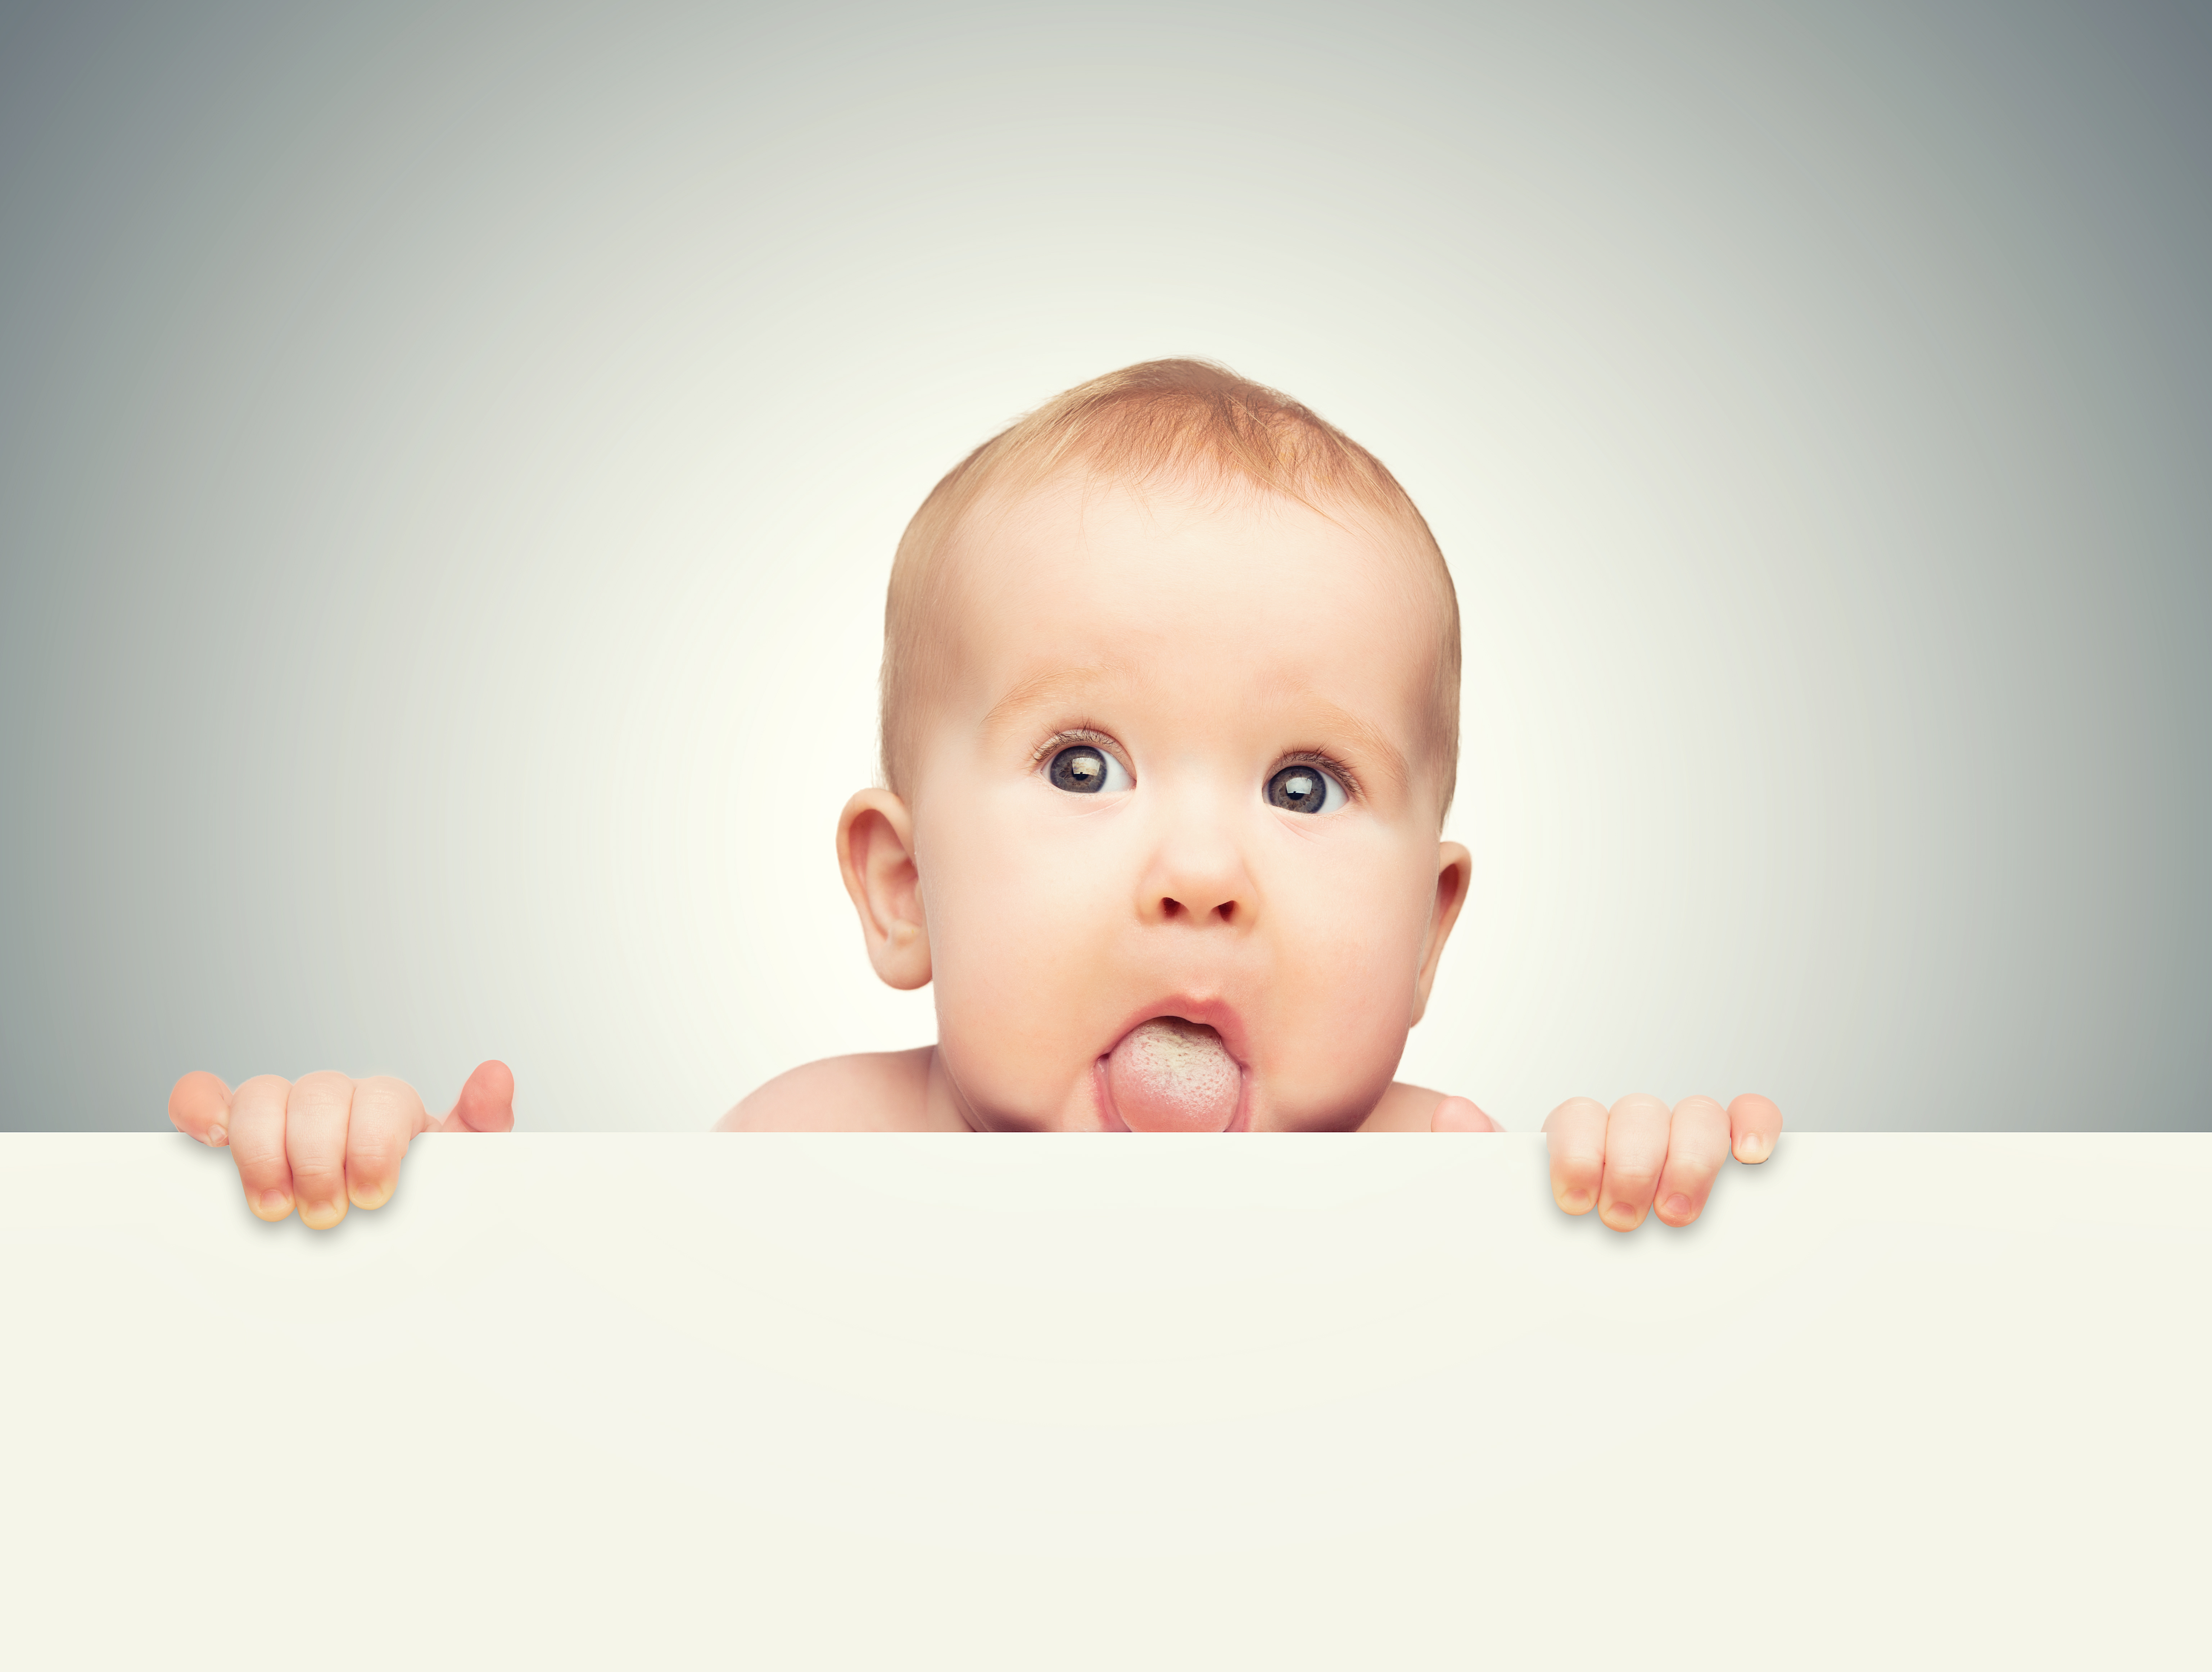 Un frein de langue restrictif est une gêne pour le nouveau-né, empêchant la langue de se mouvoir correctement. © JenkoAtaman, Adobe Stock